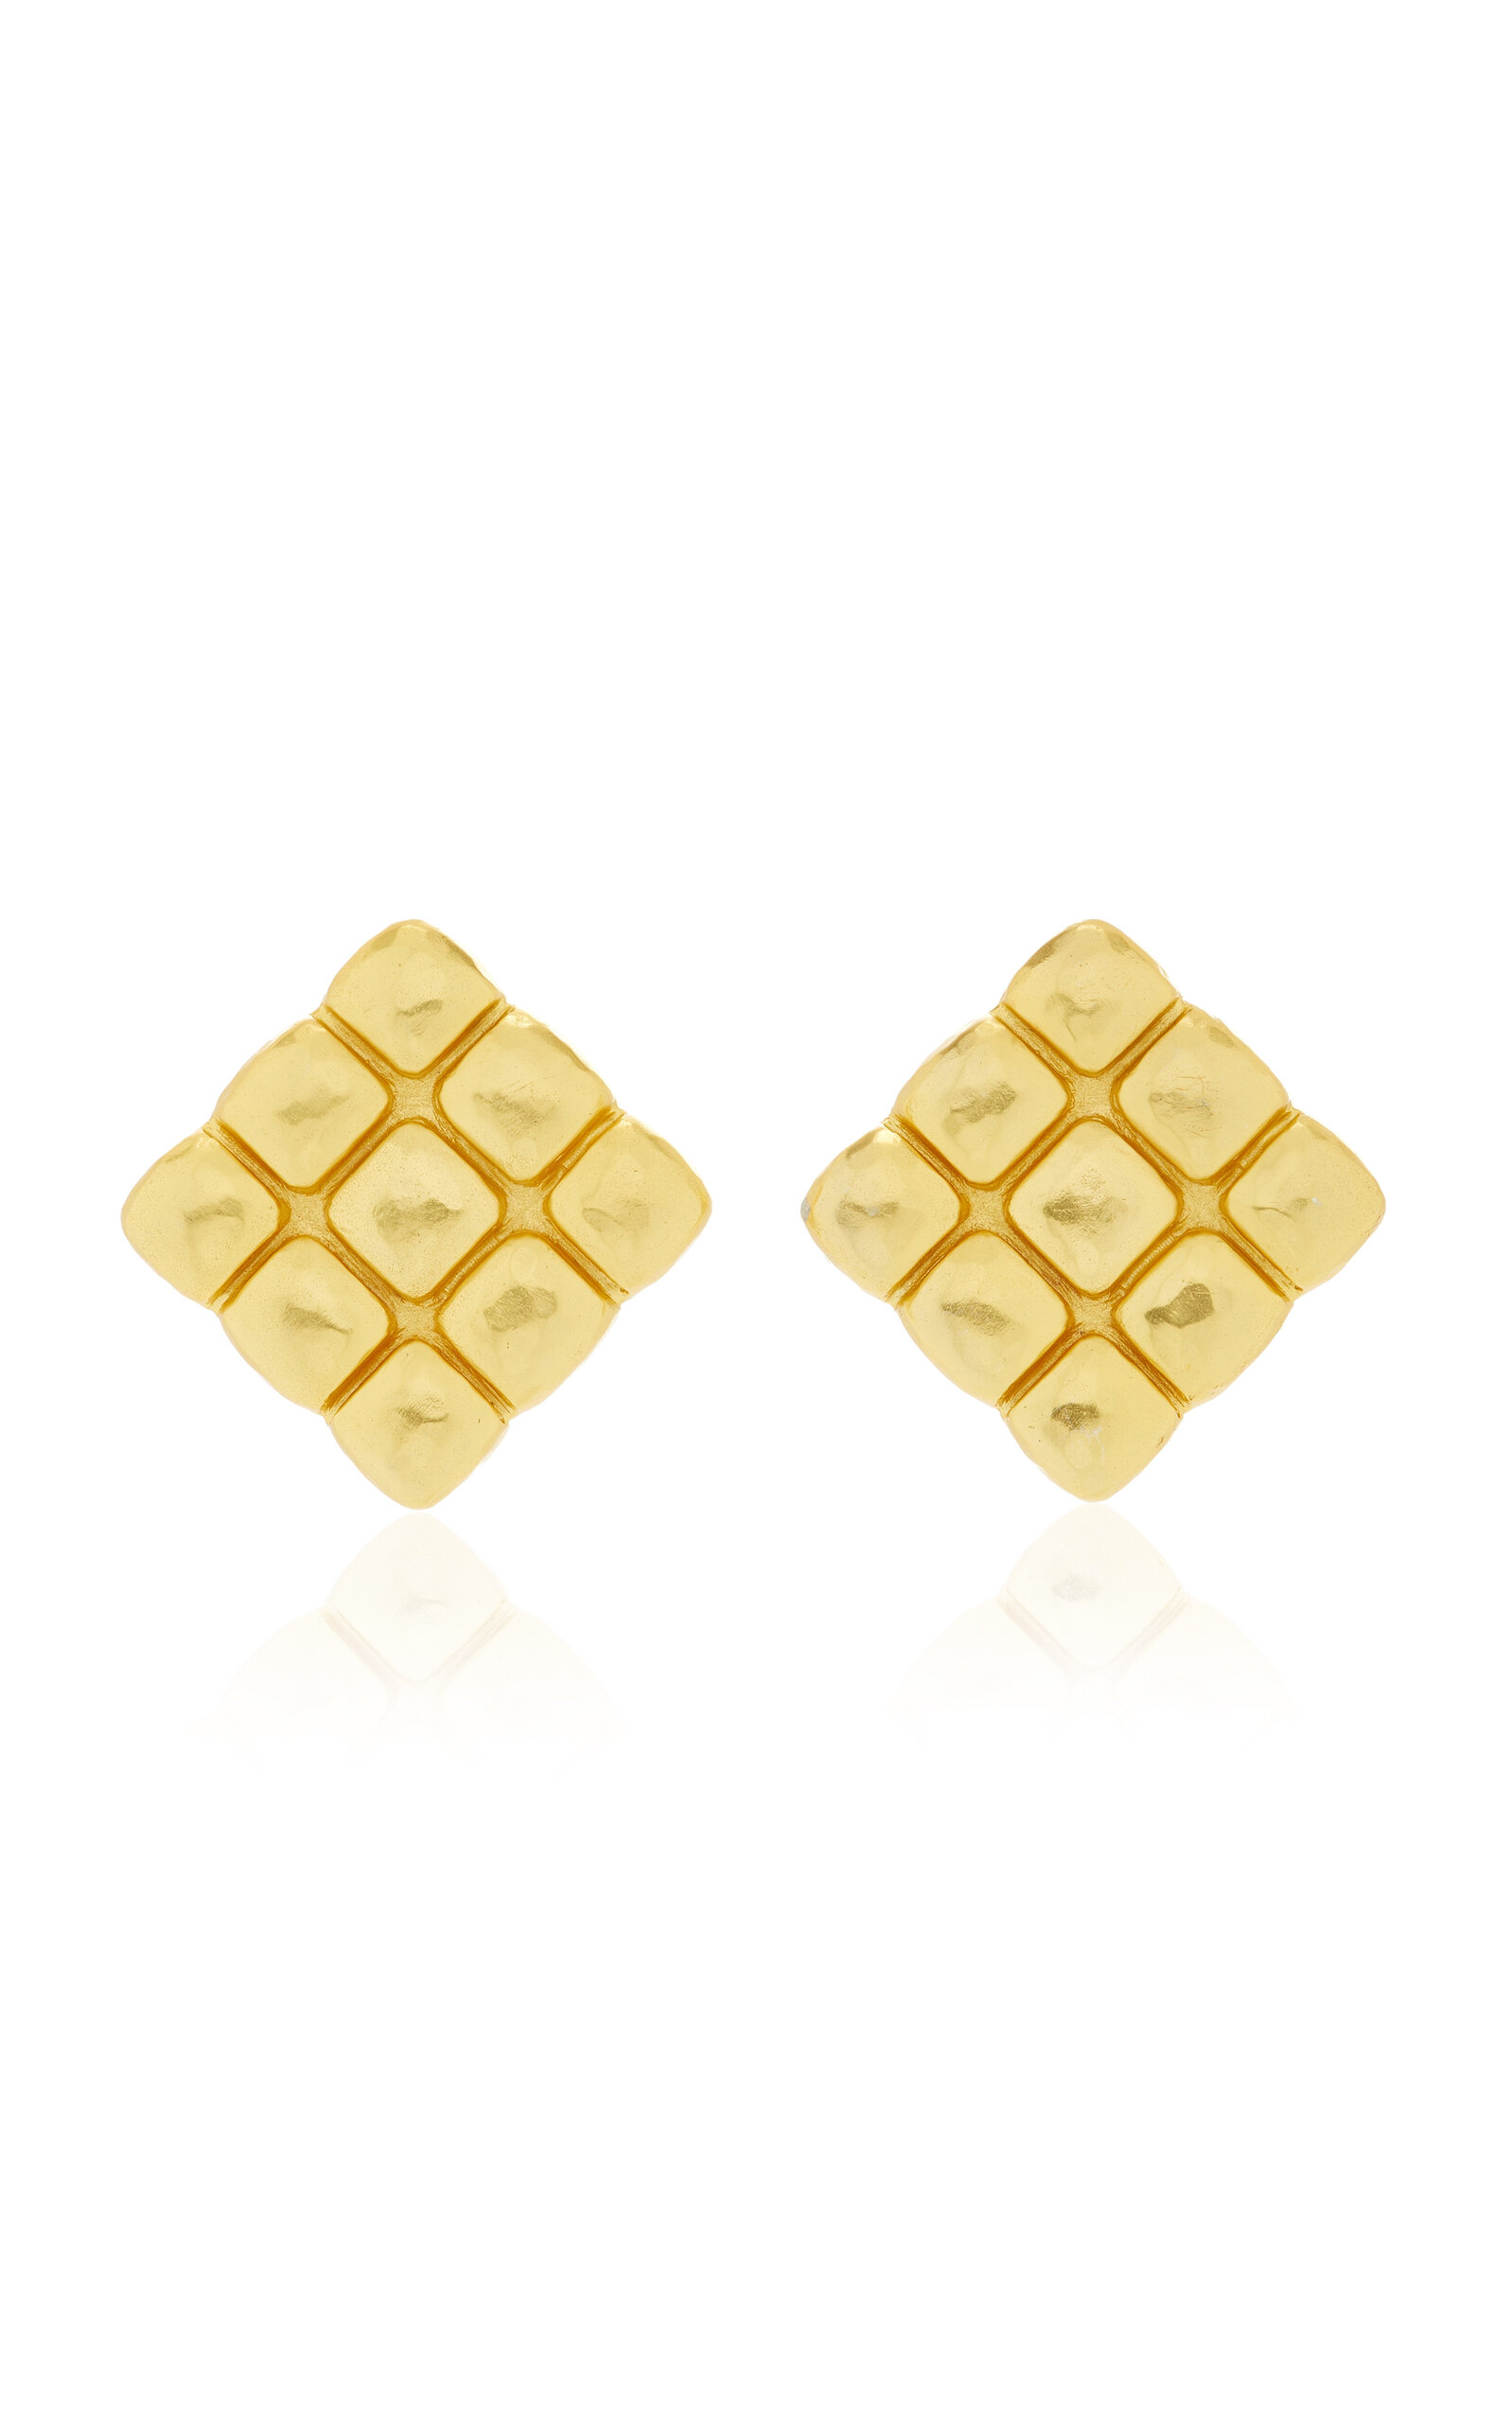 Helen 24K Gold-Plated Earrings